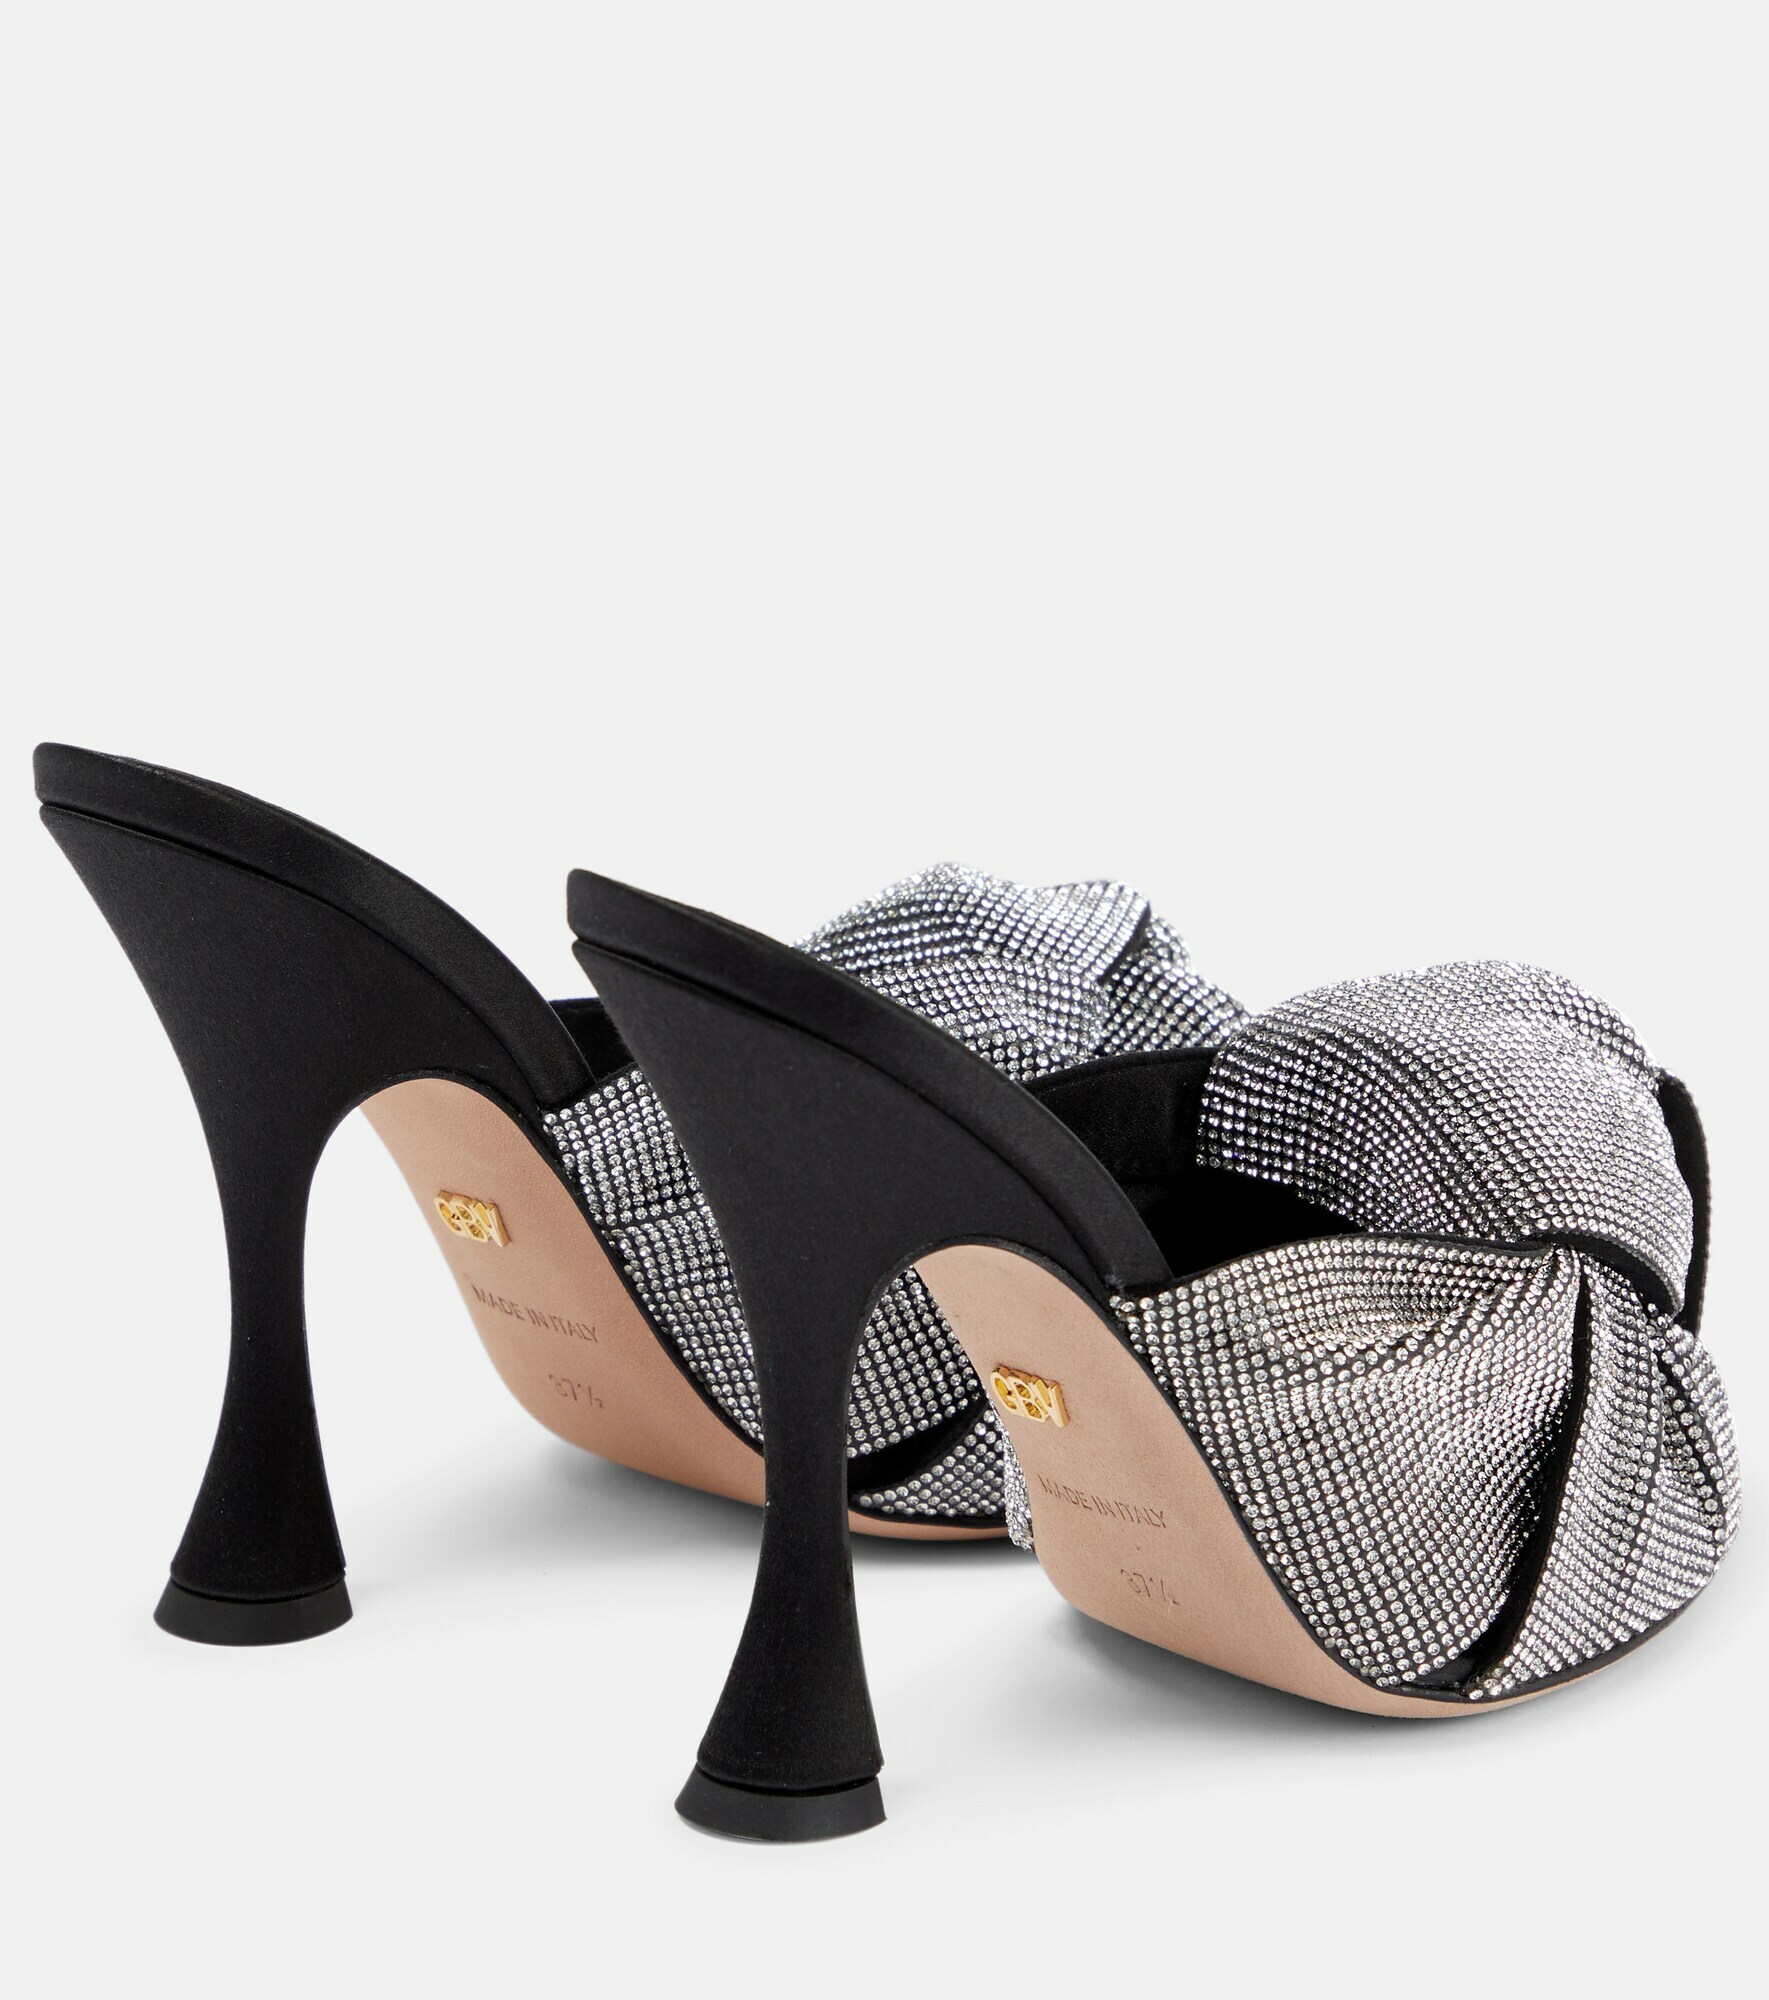 Giambattista Valli - Crystal-embellished satin sandals Giambattista Valli